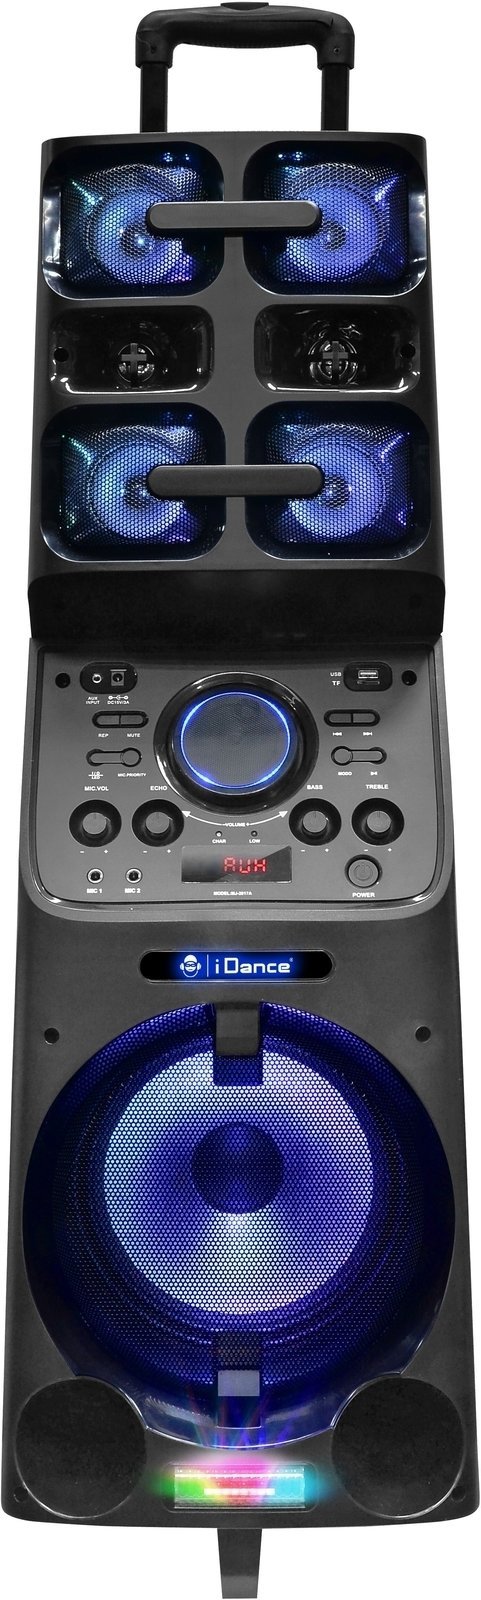 Sistema de karaoke iDance Megabox MB-8000